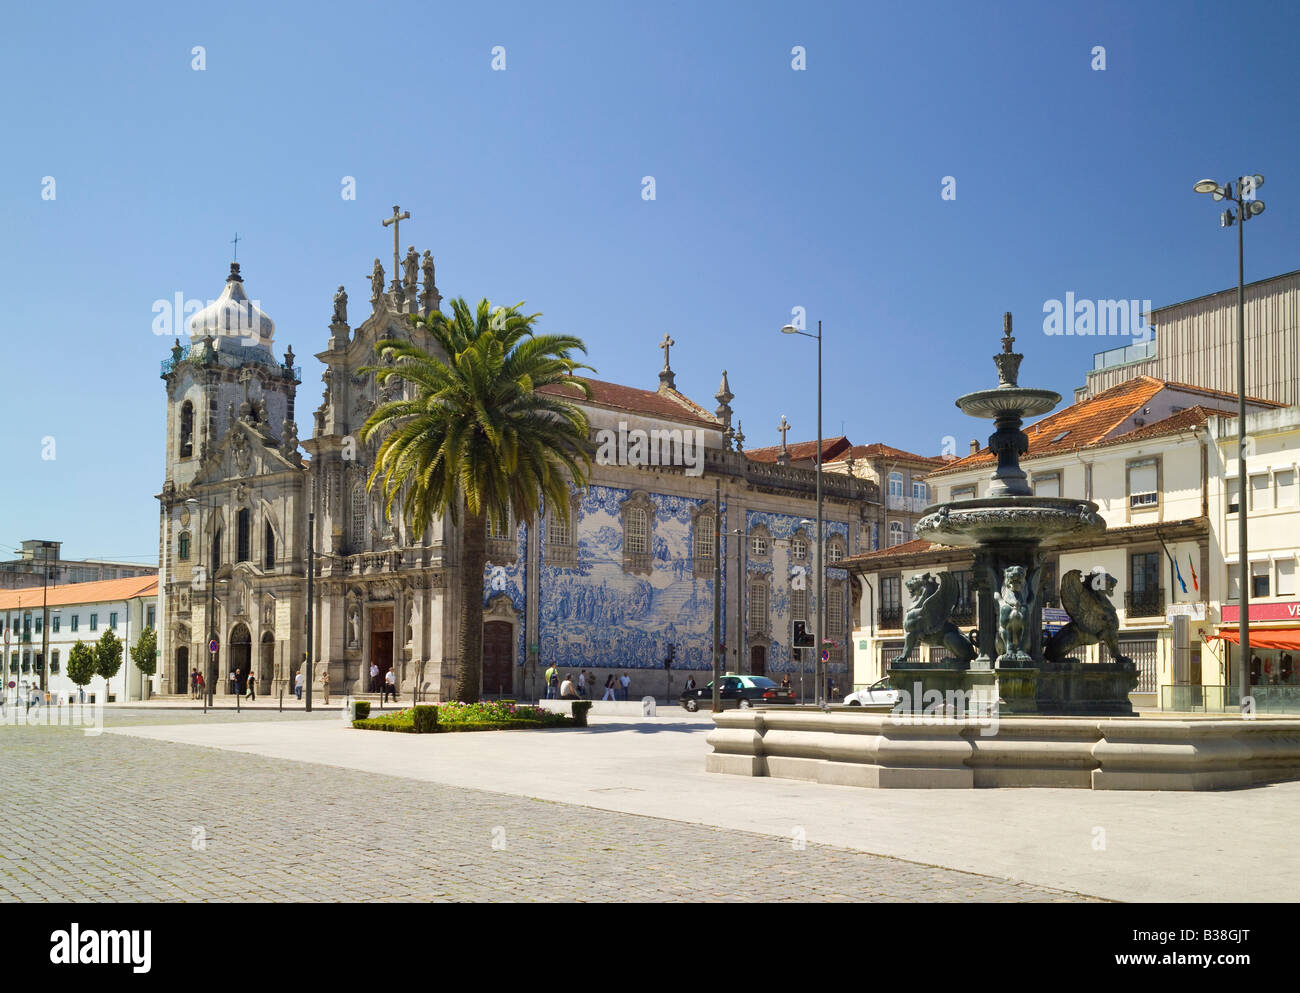 Portugal Porto, l'Igreja dos Carmelitas church couverts d'azulejos et une fontaine baroque ( chafariz ) Banque D'Images